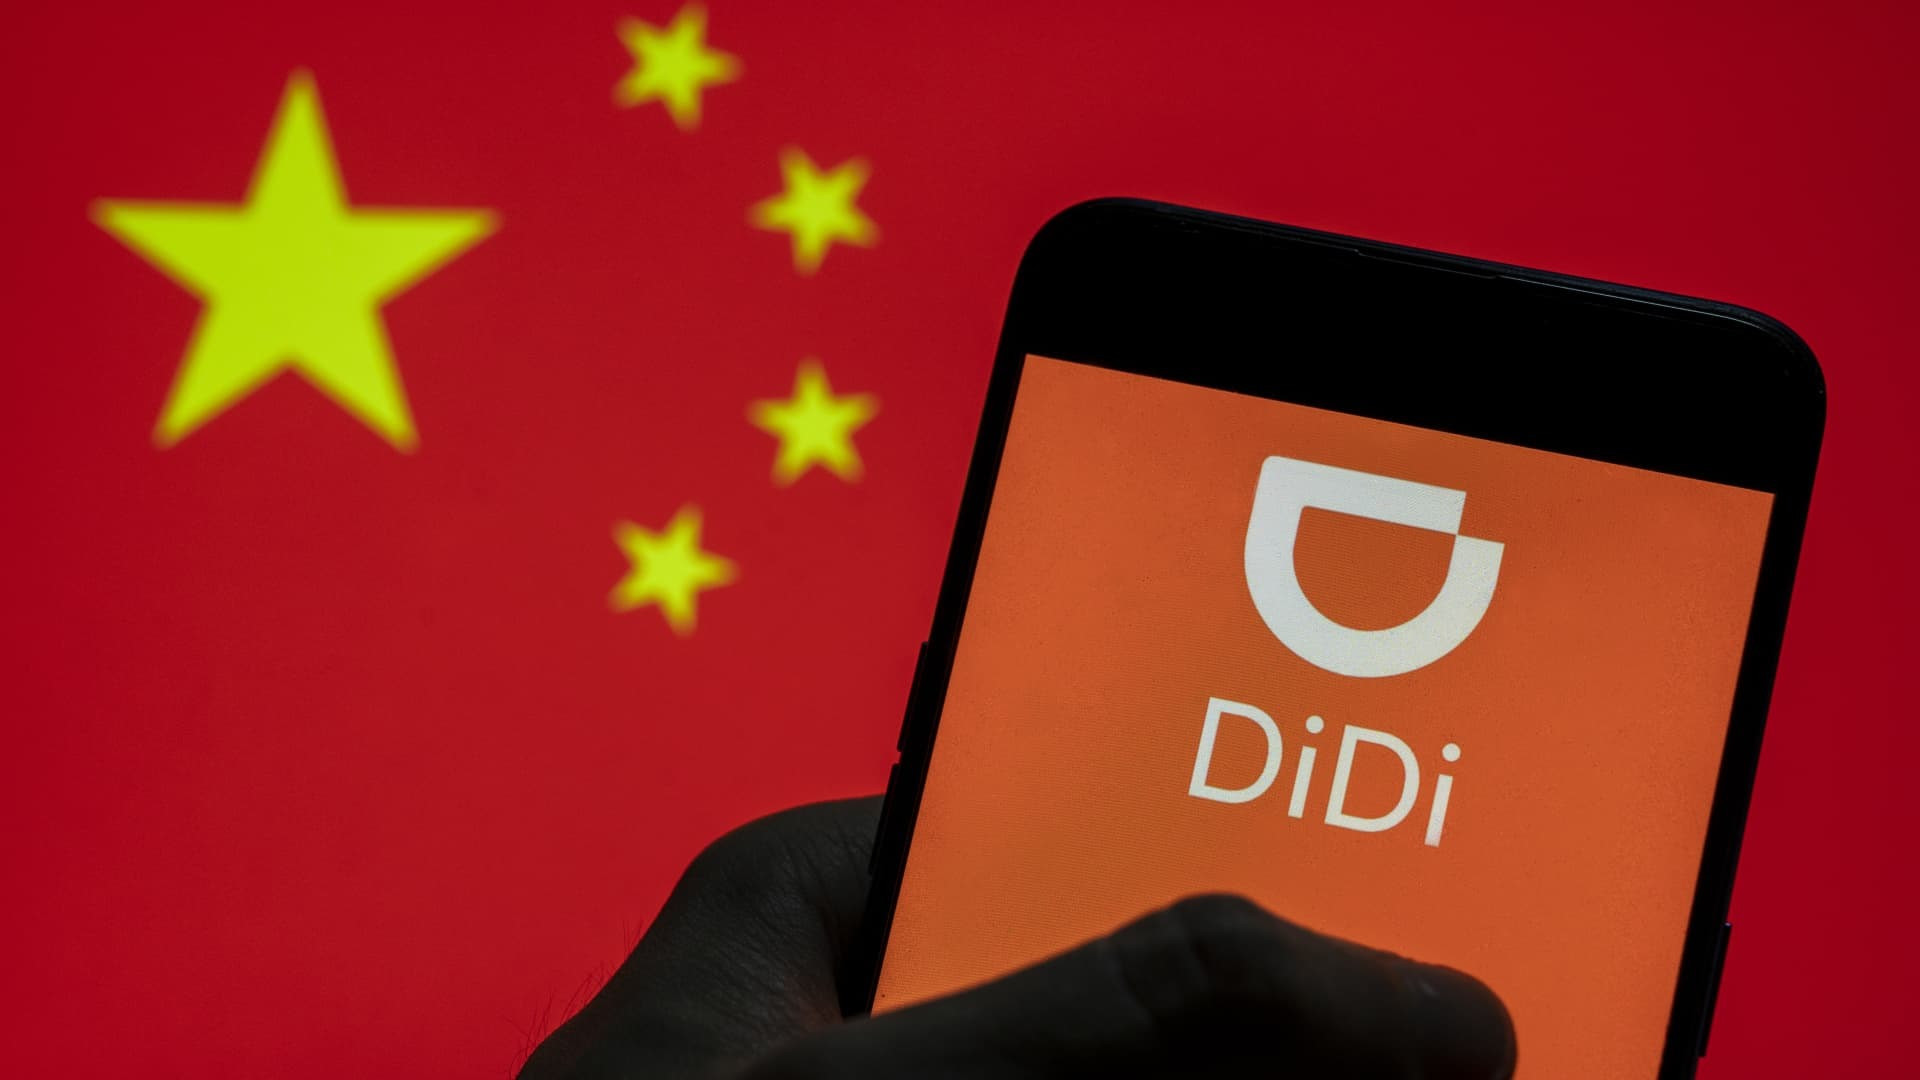 Sau chính quyền Trung Quốc, Didi cũng đang phải đối mặt với sự “nhòm ngó” của cơ quan tư pháp Mỹ. Ảnh: Getty Images.